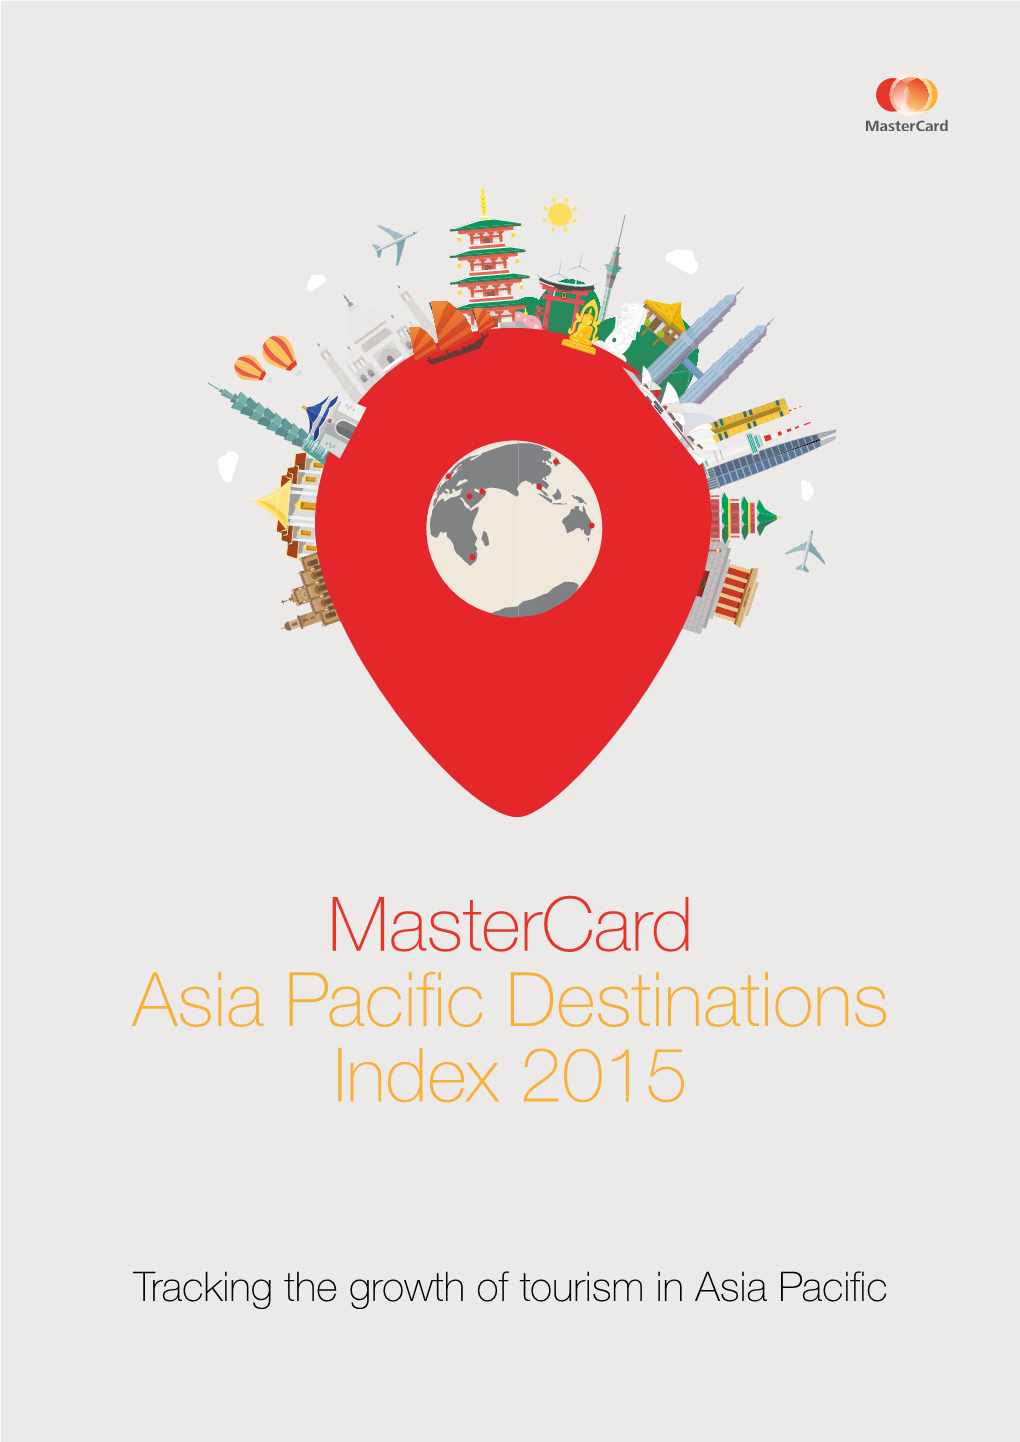 Mastercard Asia Pacific Destinations Index 2015